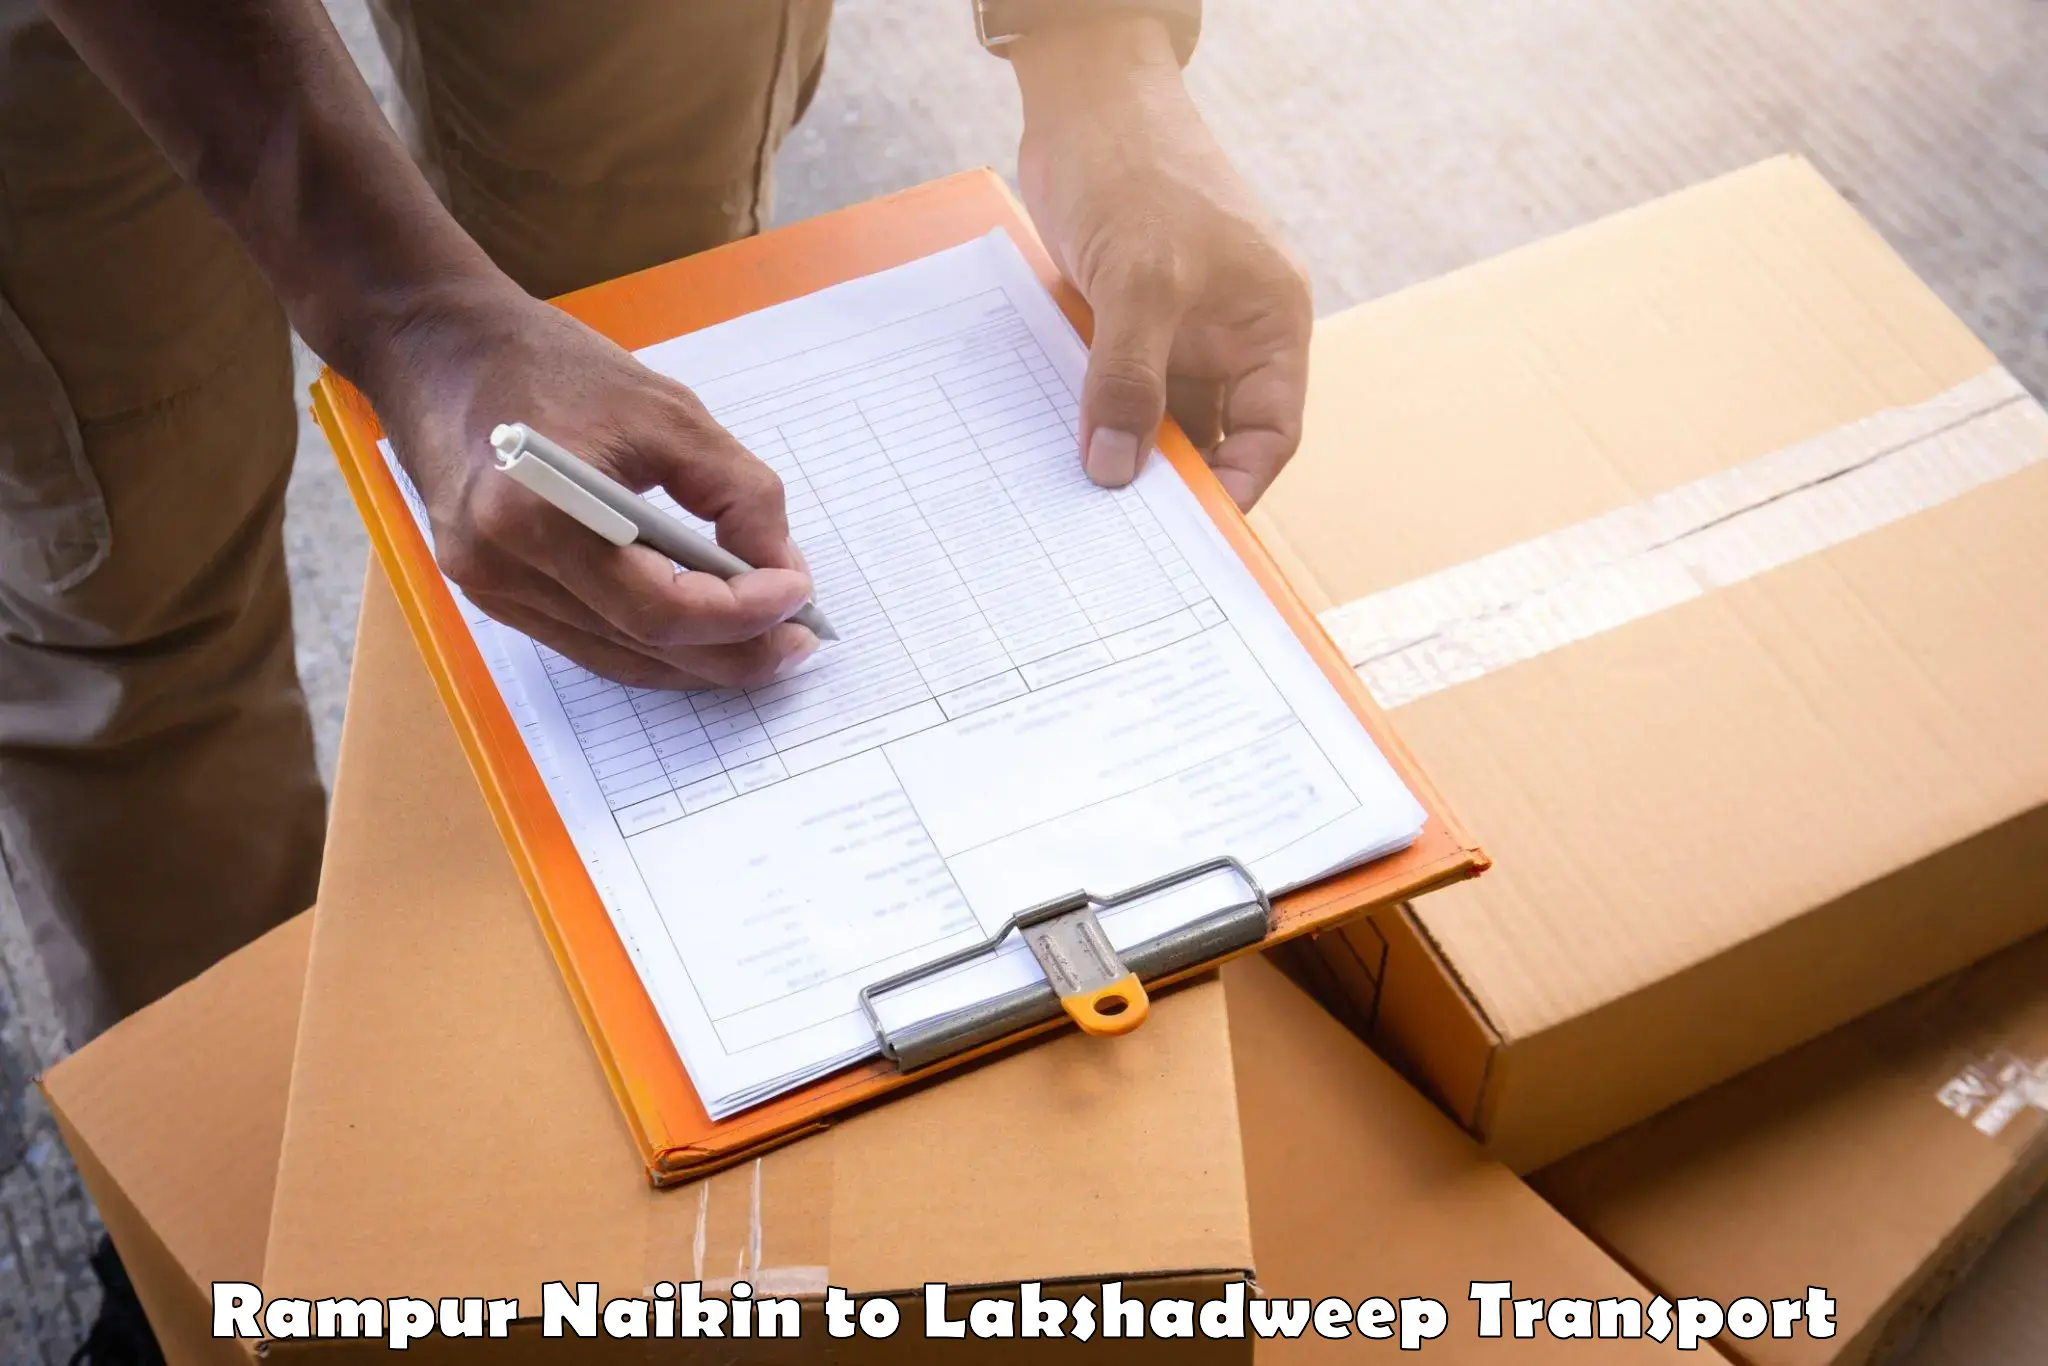 Daily transport service Rampur Naikin to Lakshadweep